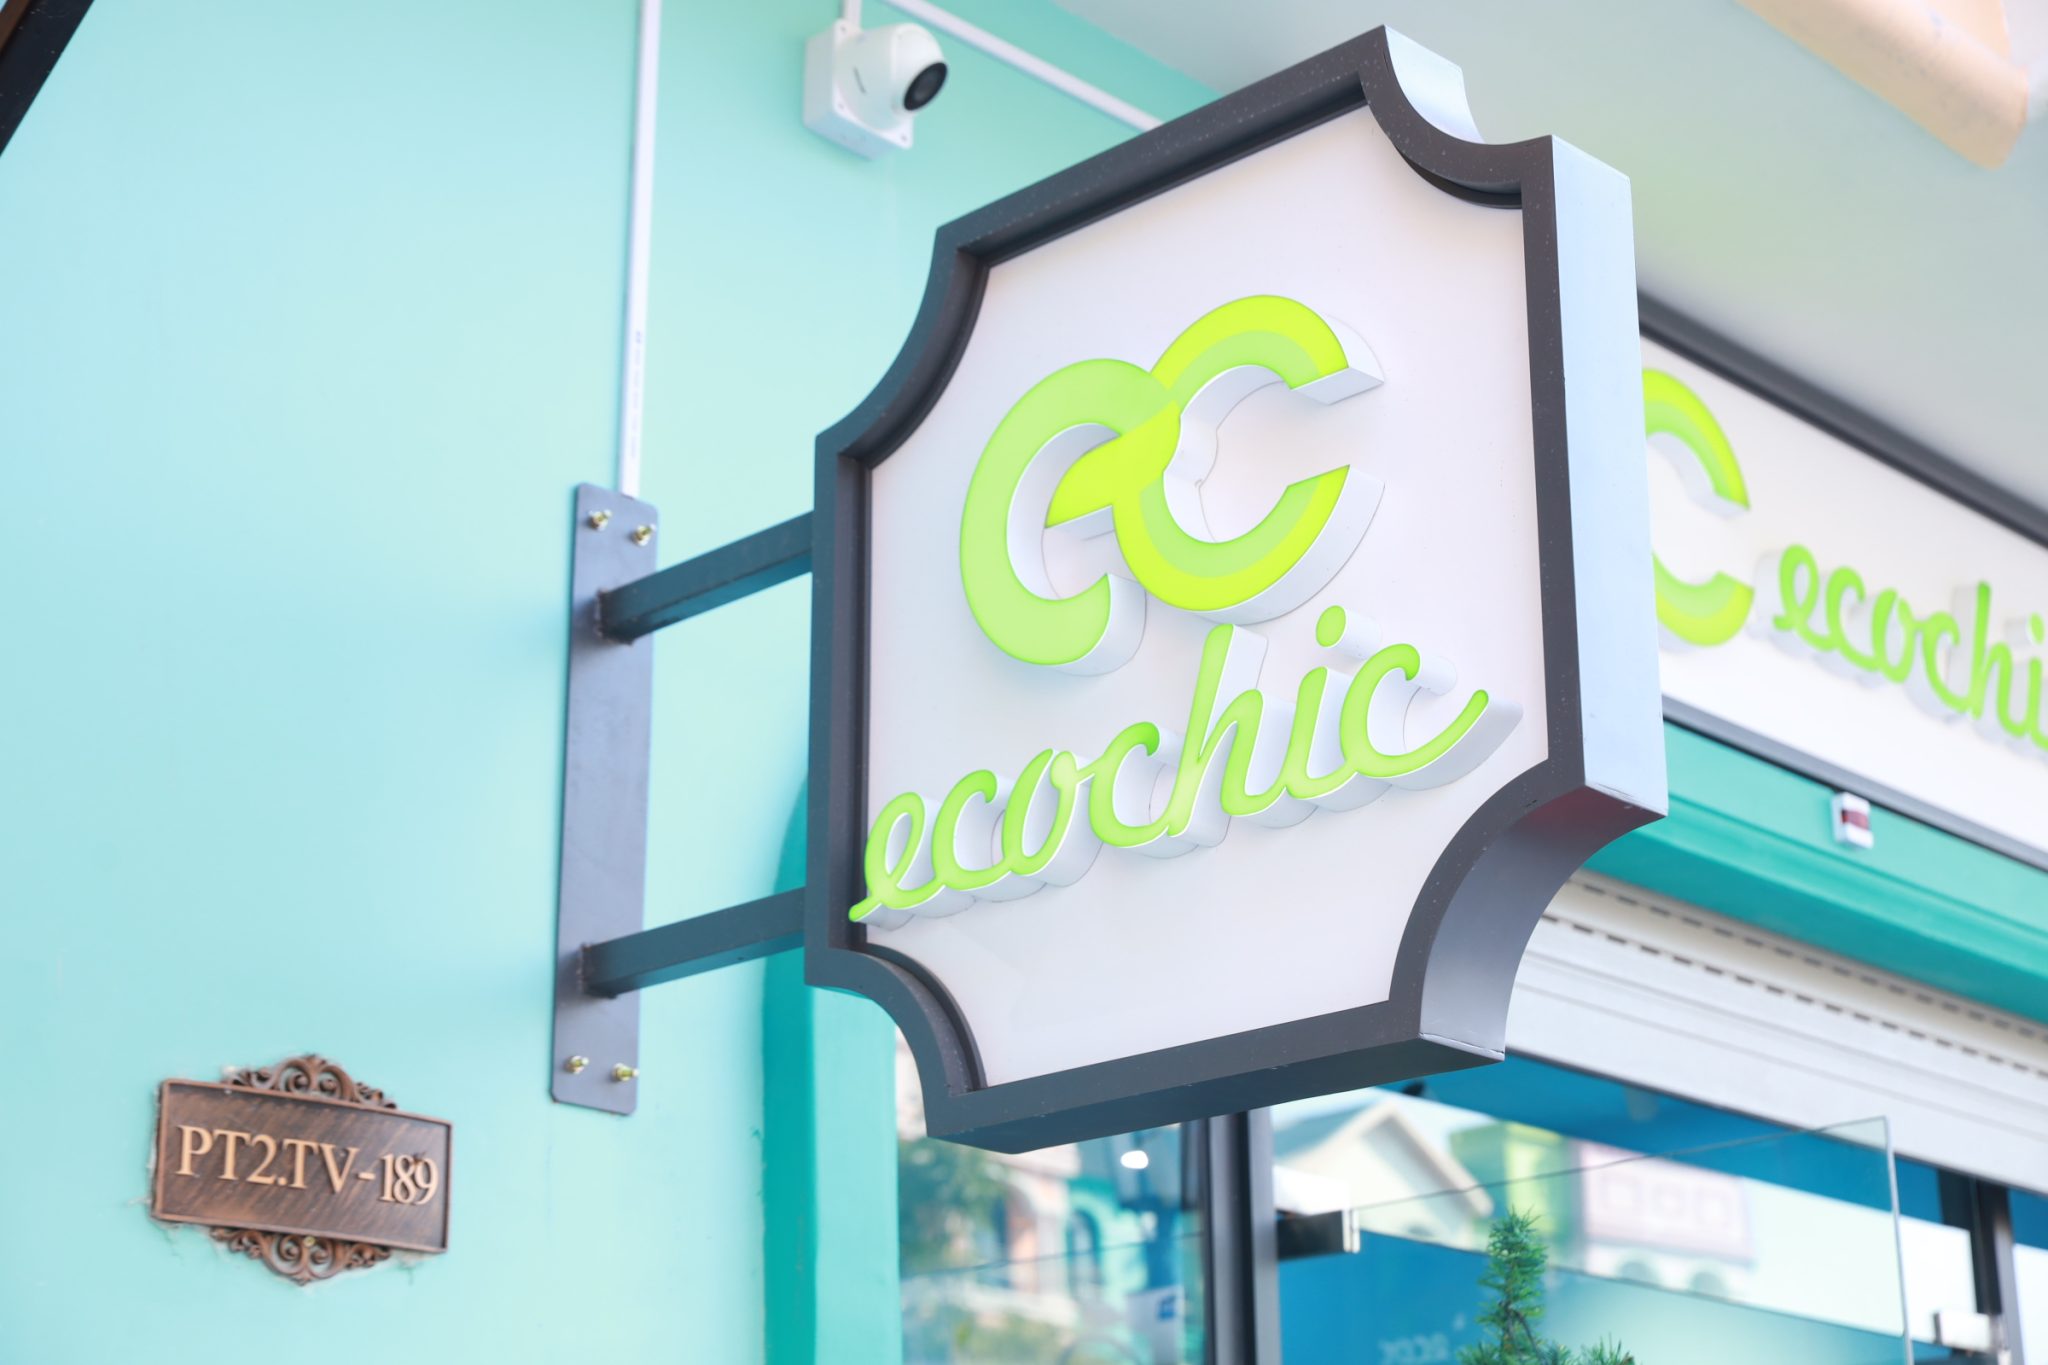 Nếu như bạn thích mua sắm thì Ecochic sẽ là một nơi lý tưởng cho bạn